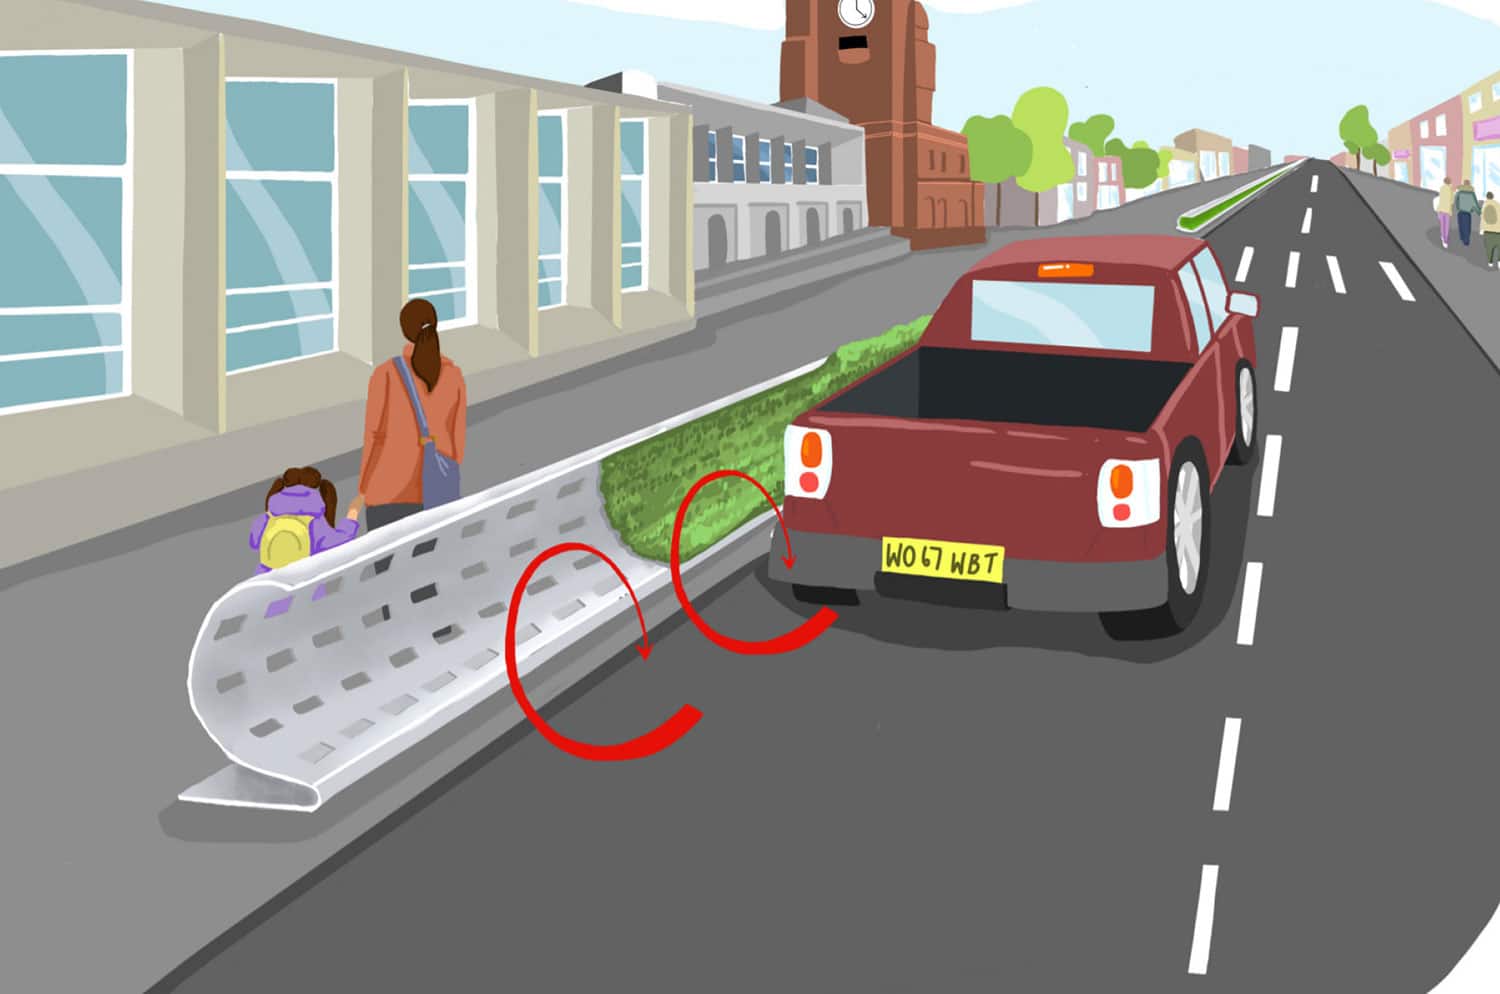 Curved roadside barrier design mitigates air pollution